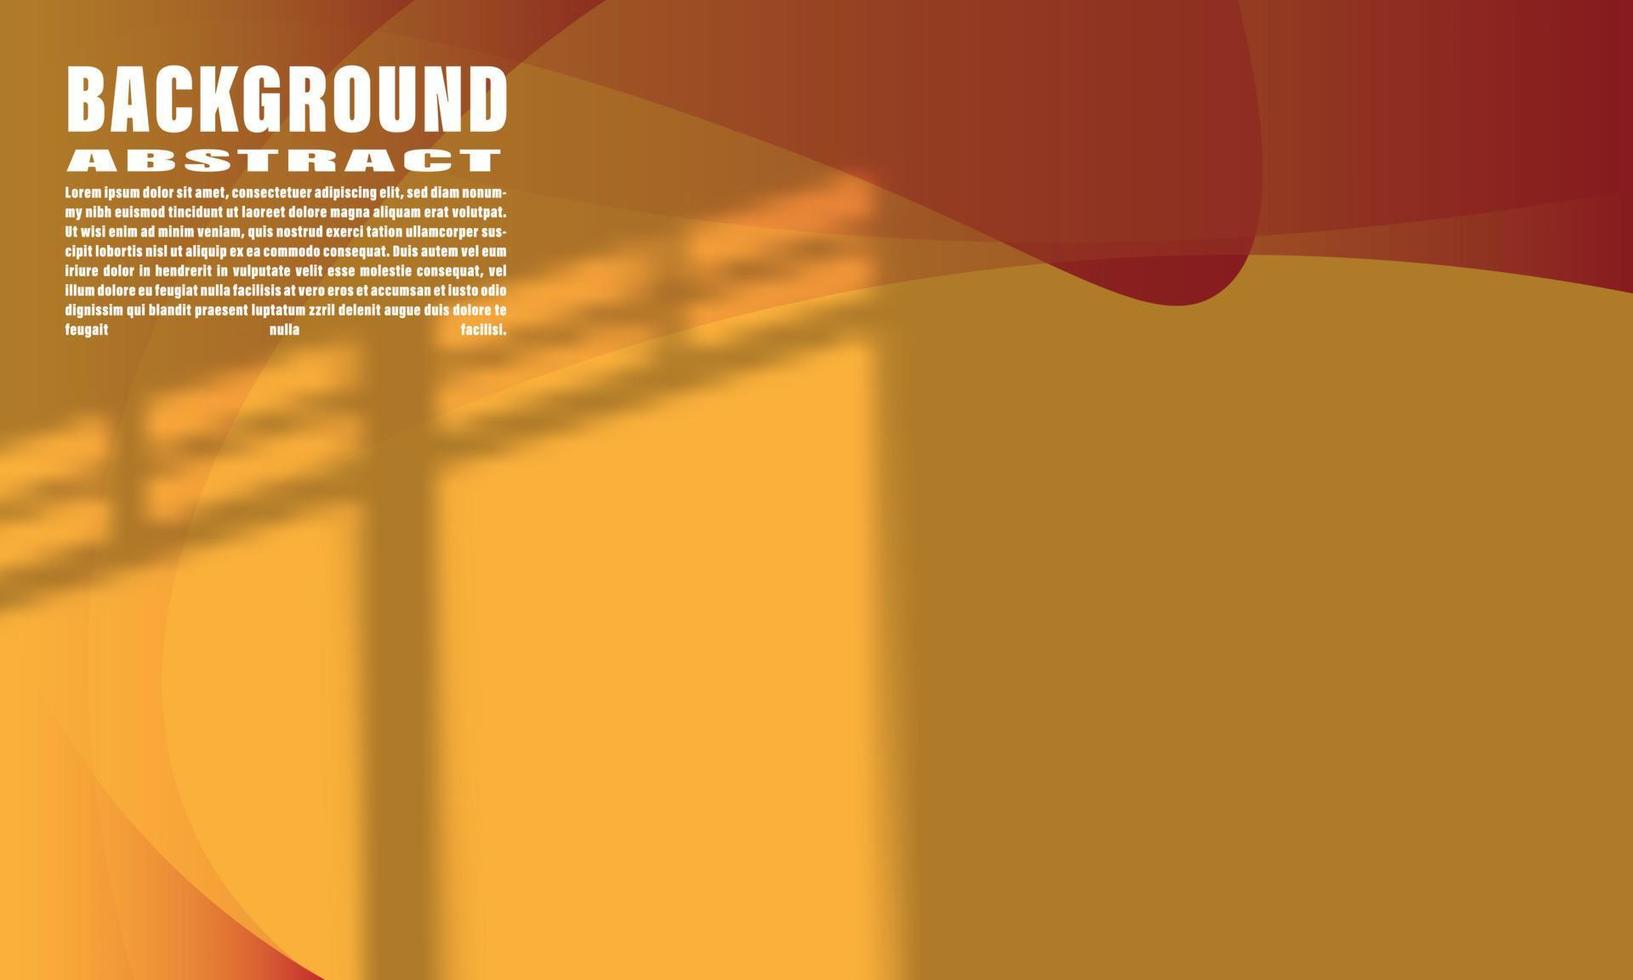 fundo abstrato geométrico líquido colorido forma de onda laranja e vermelho com sobreposição shdaow elegante na moda para web design eps 10 vetor